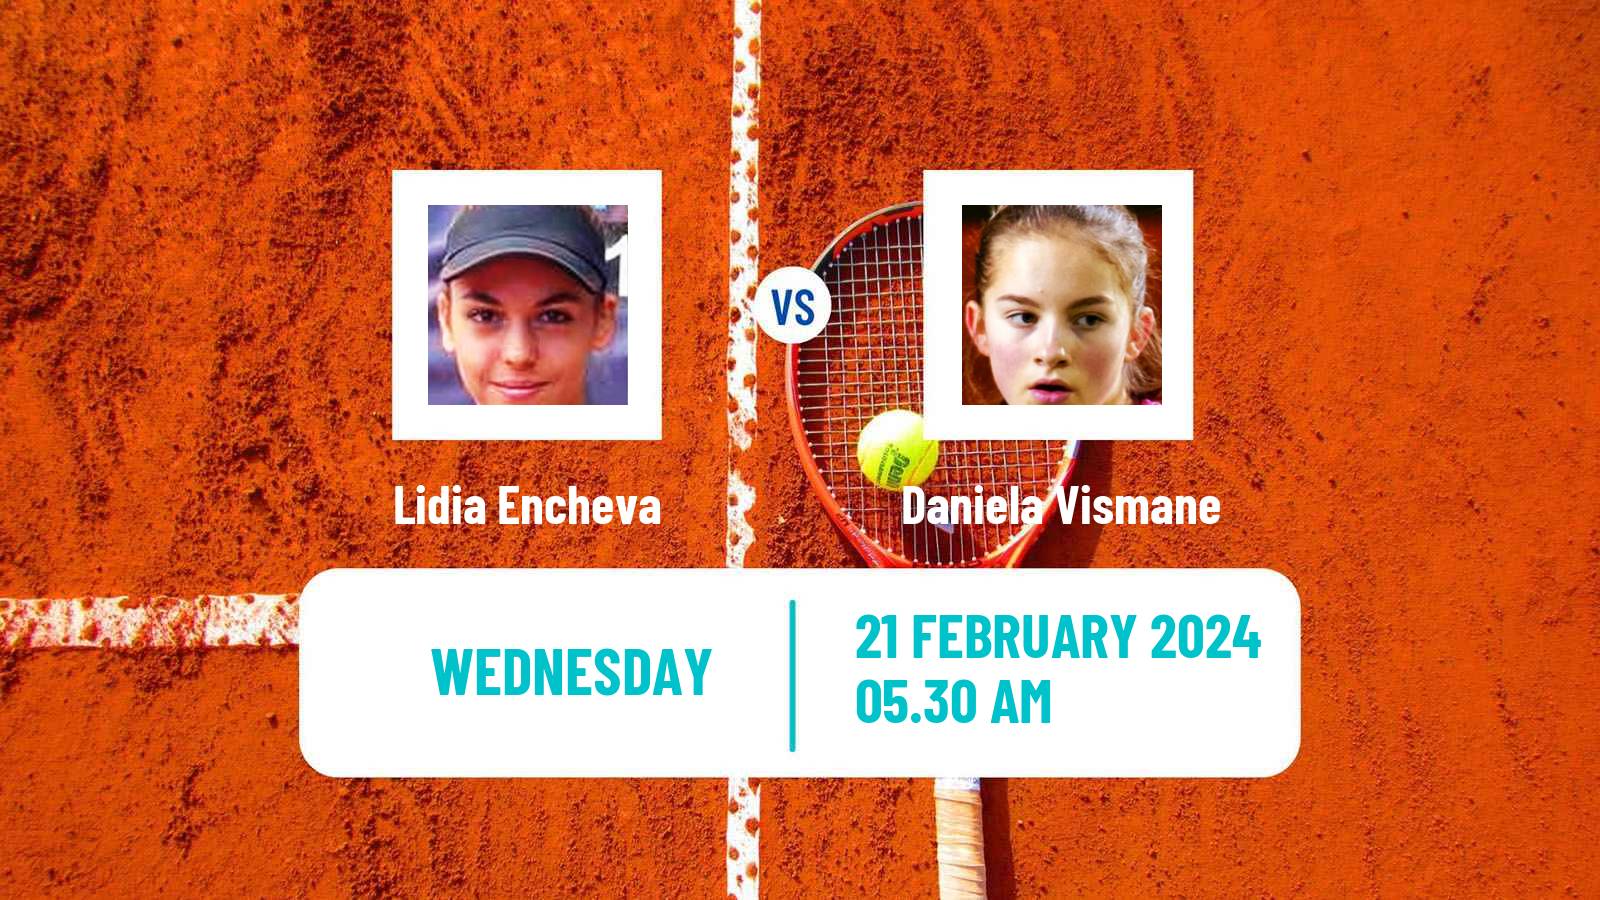 Tennis ITF W35 Antalya 4 Women Lidia Encheva - Daniela Vismane